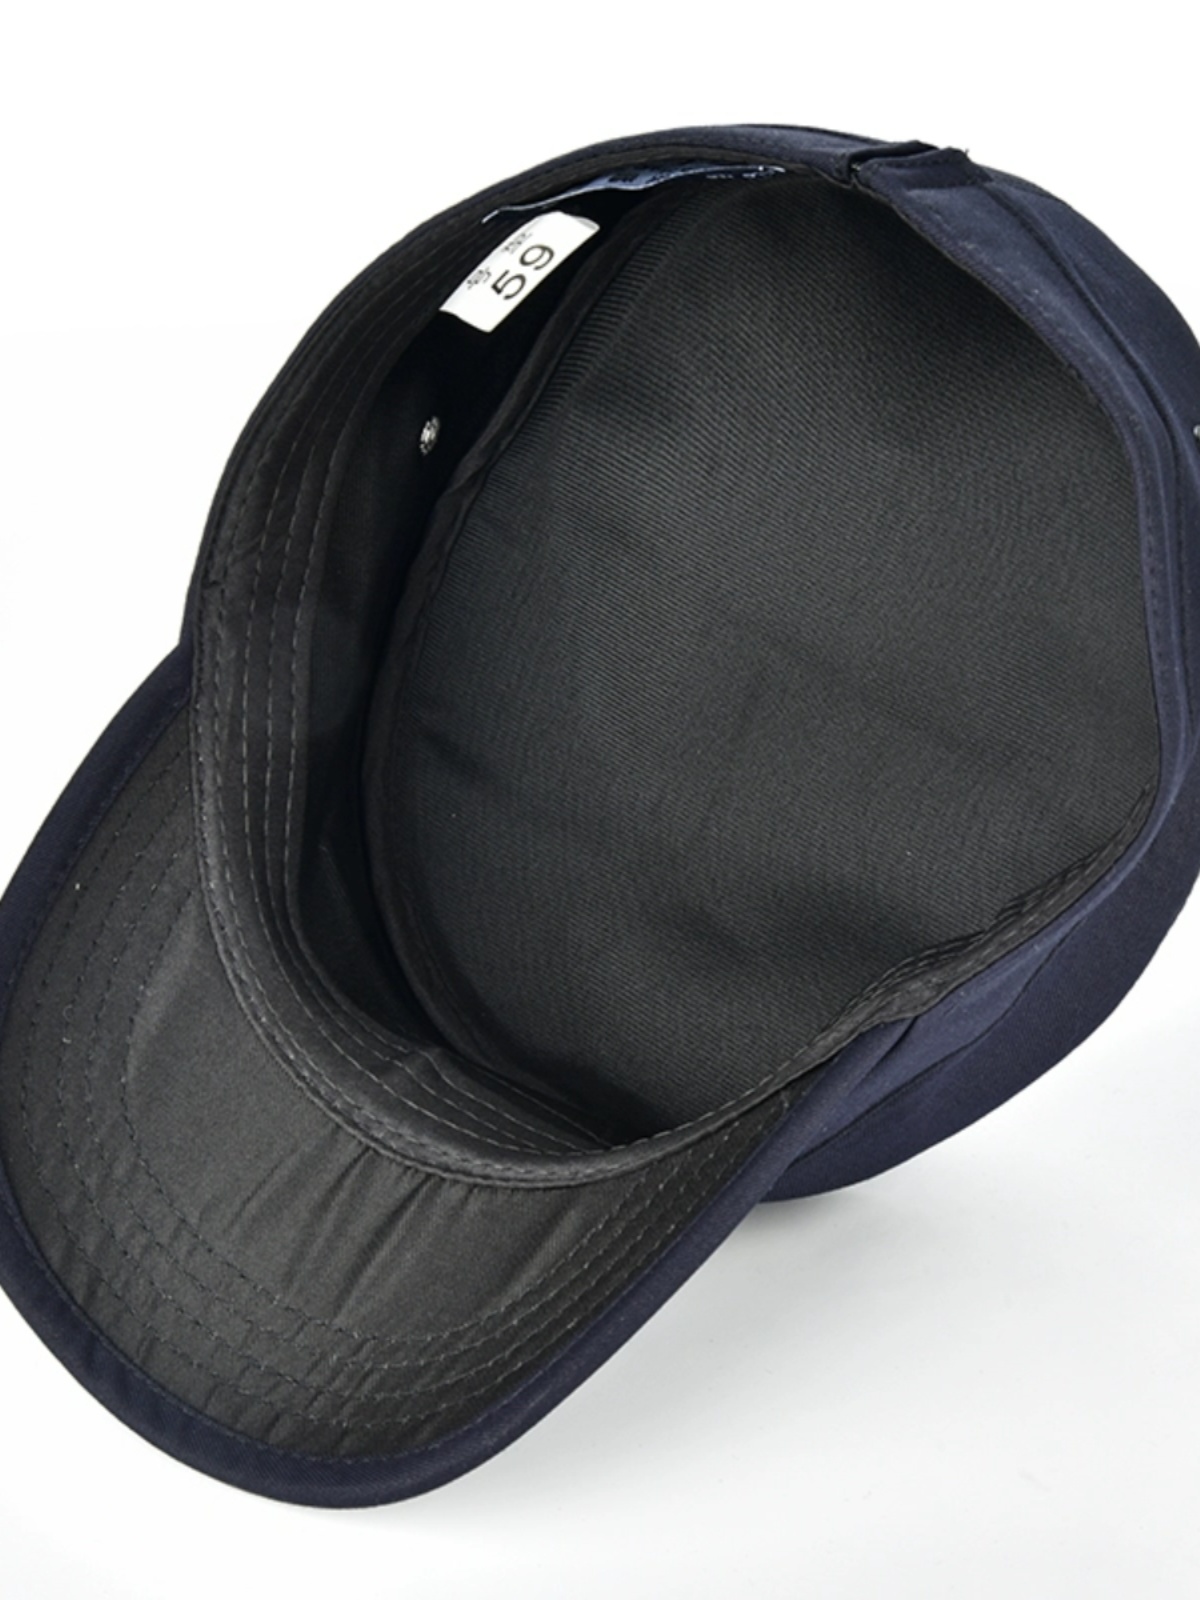 新款作训帽硬顶深藏青黑色斜纹格子布网户外防晒保安执勤平顶便帽